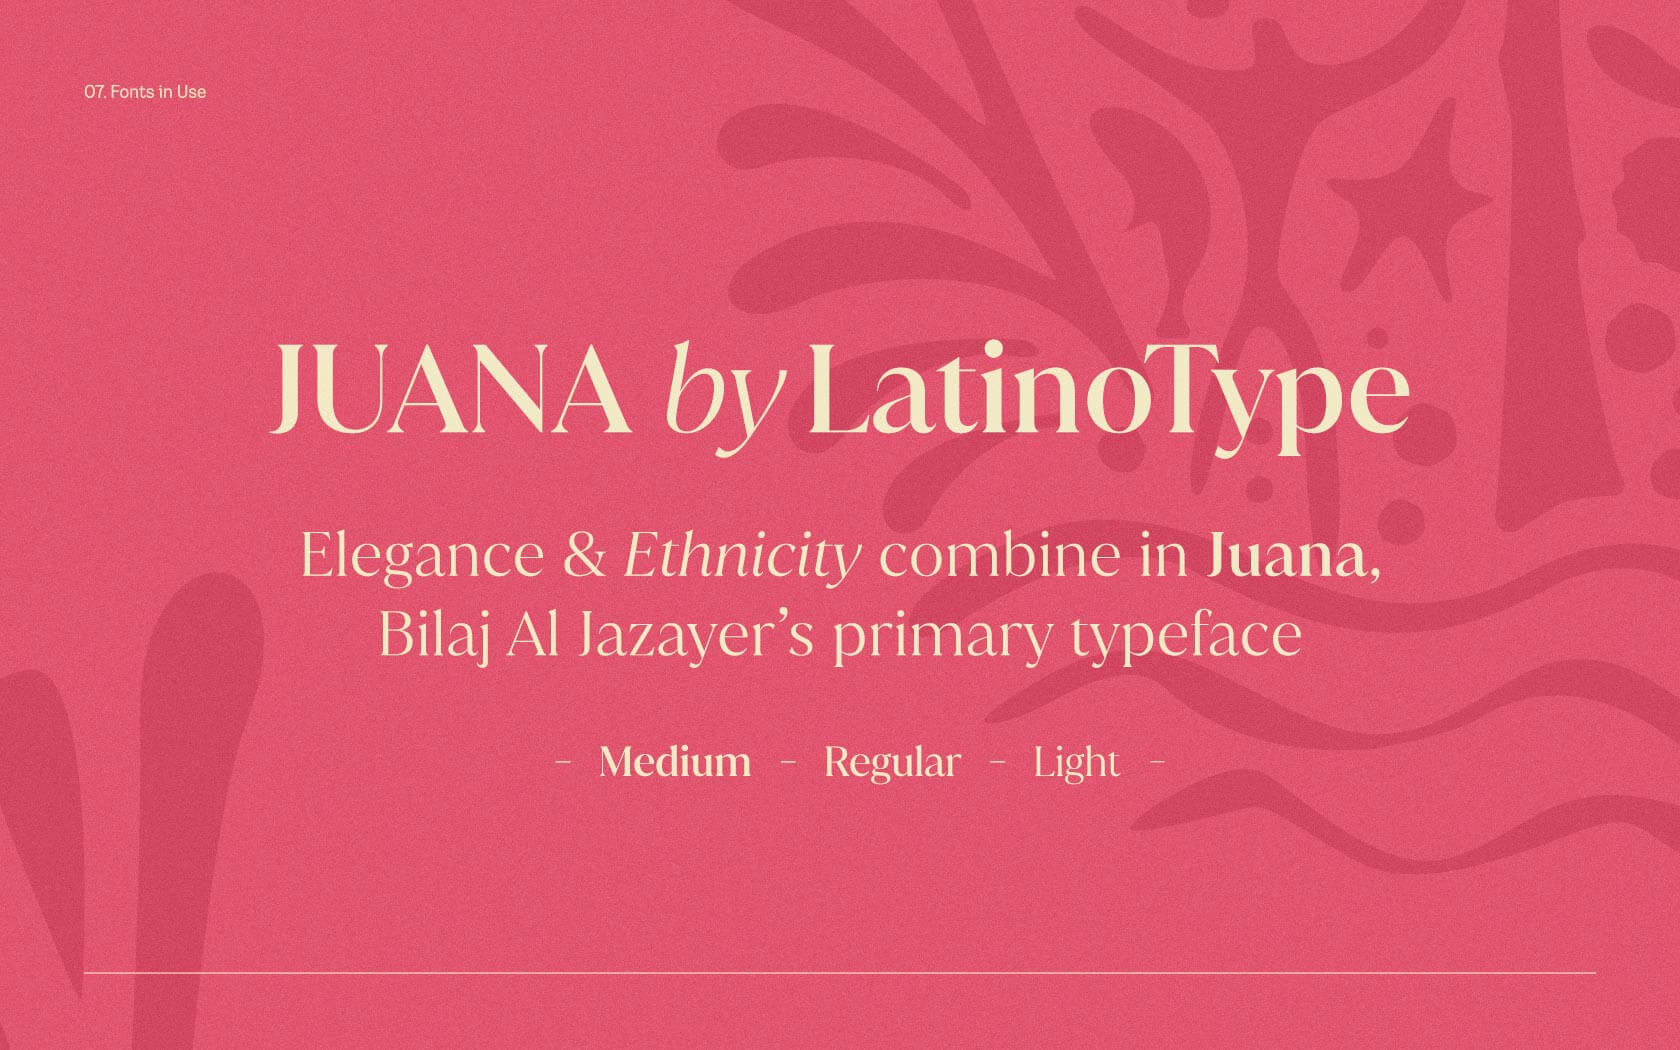 Bilaj. Juana font in use